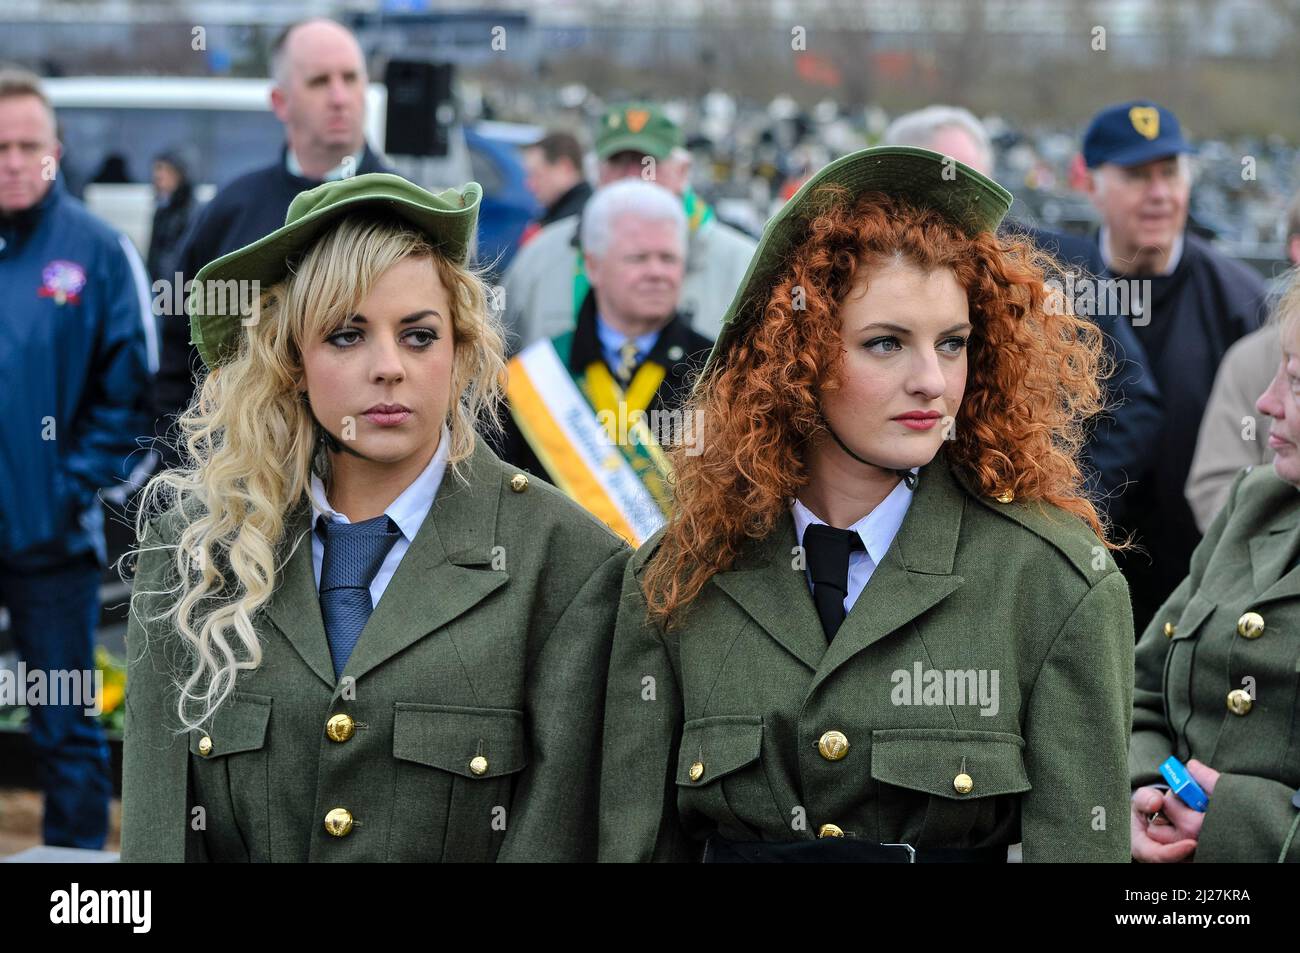 31/03/2013, Belfast, Irlanda del Nord. I Repubblicani Sinn Fein celebrano la loro commemorazione pasquale annuale per i loro volontari. Foto Stock